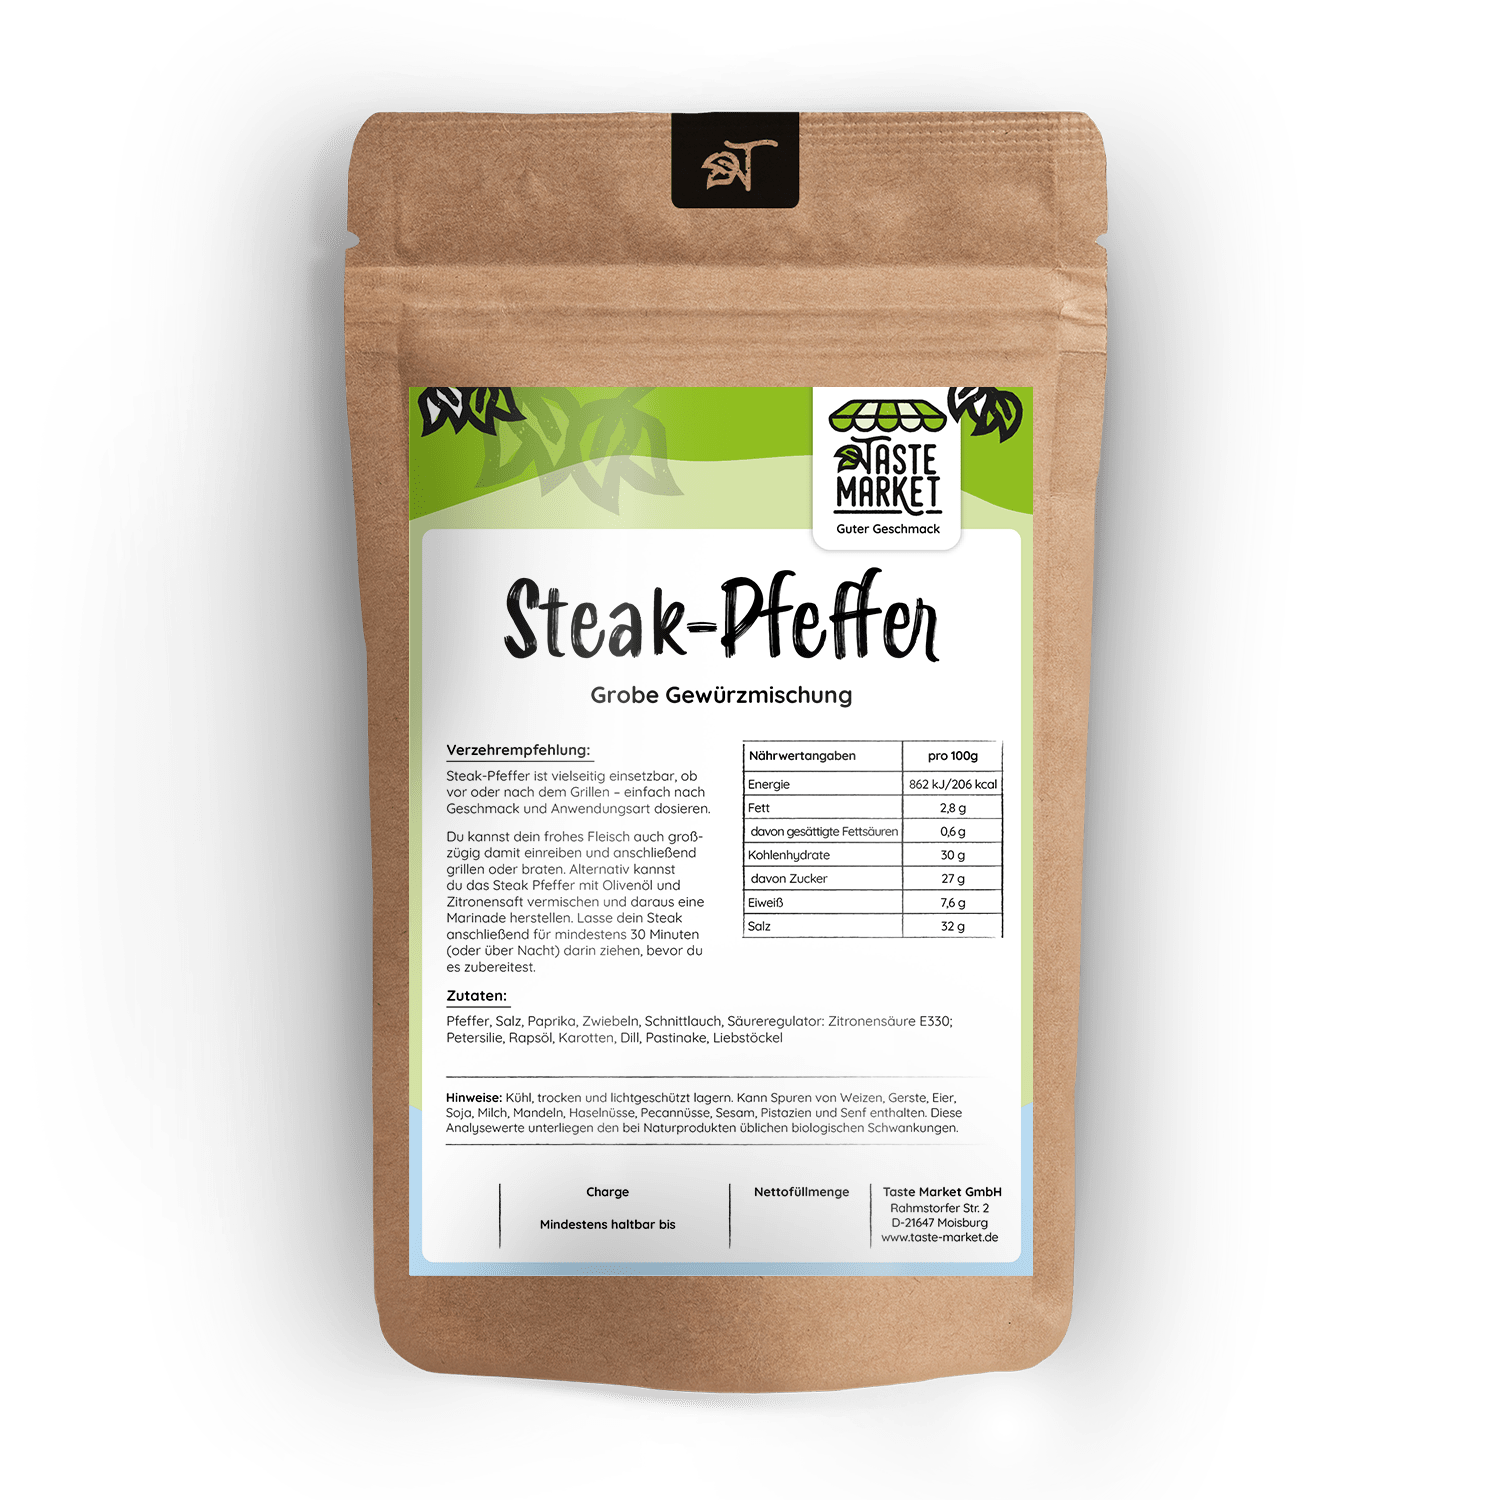 Steak-Pfeffer